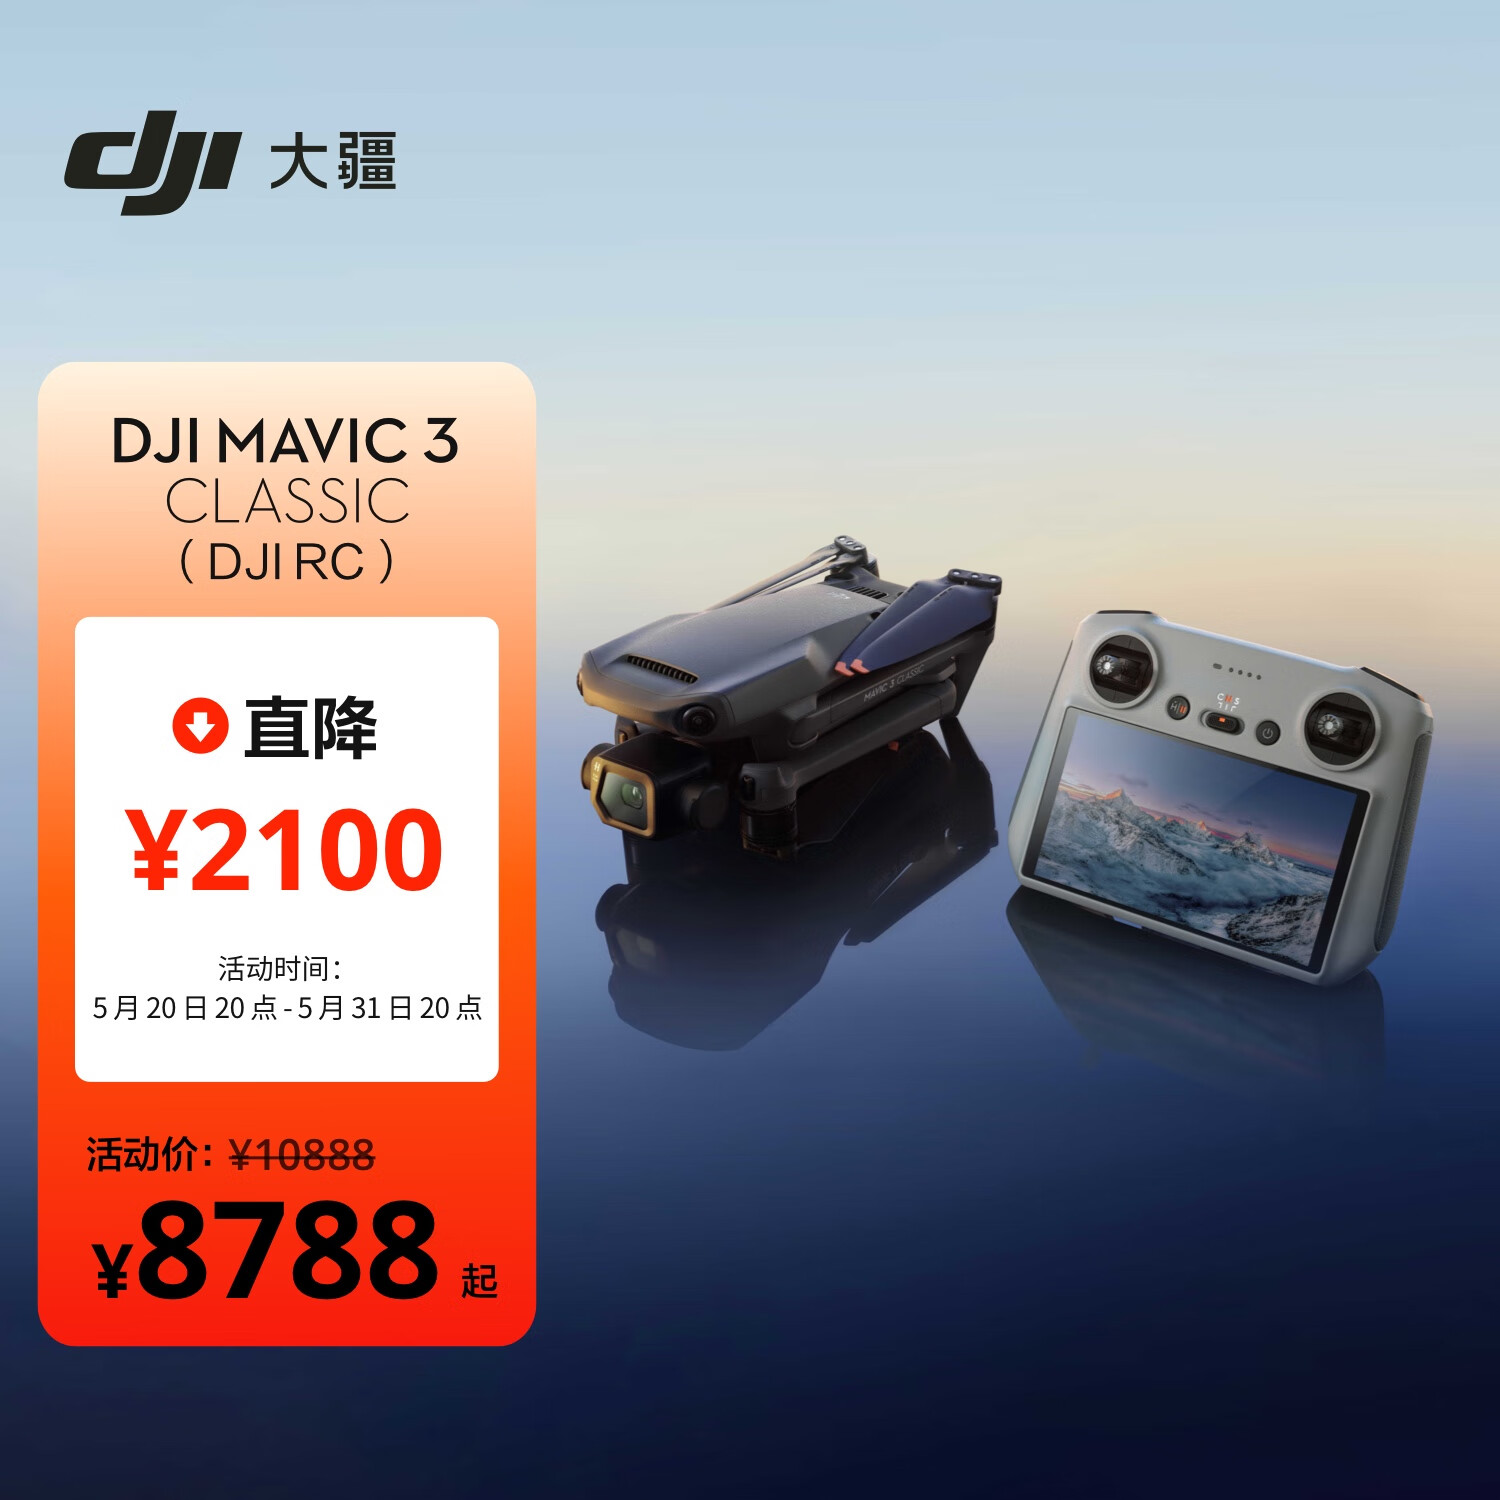 大疆 DJI Mavic 3 Classic (DJI RC) 御3经典版航拍无人机 高清影像拍摄 智能返航遥控飞机+128G内存卡